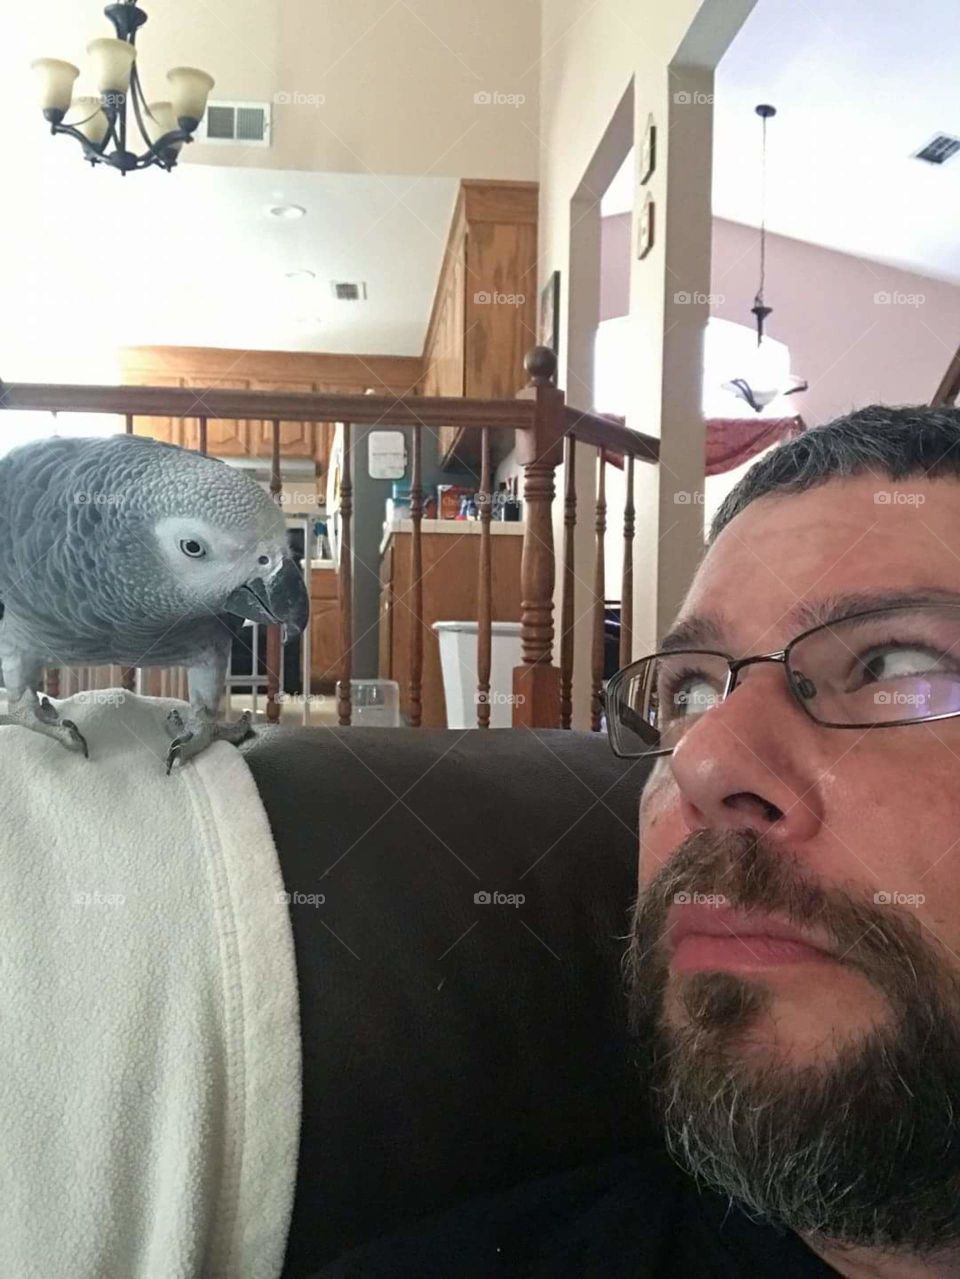 Parrot curiosity